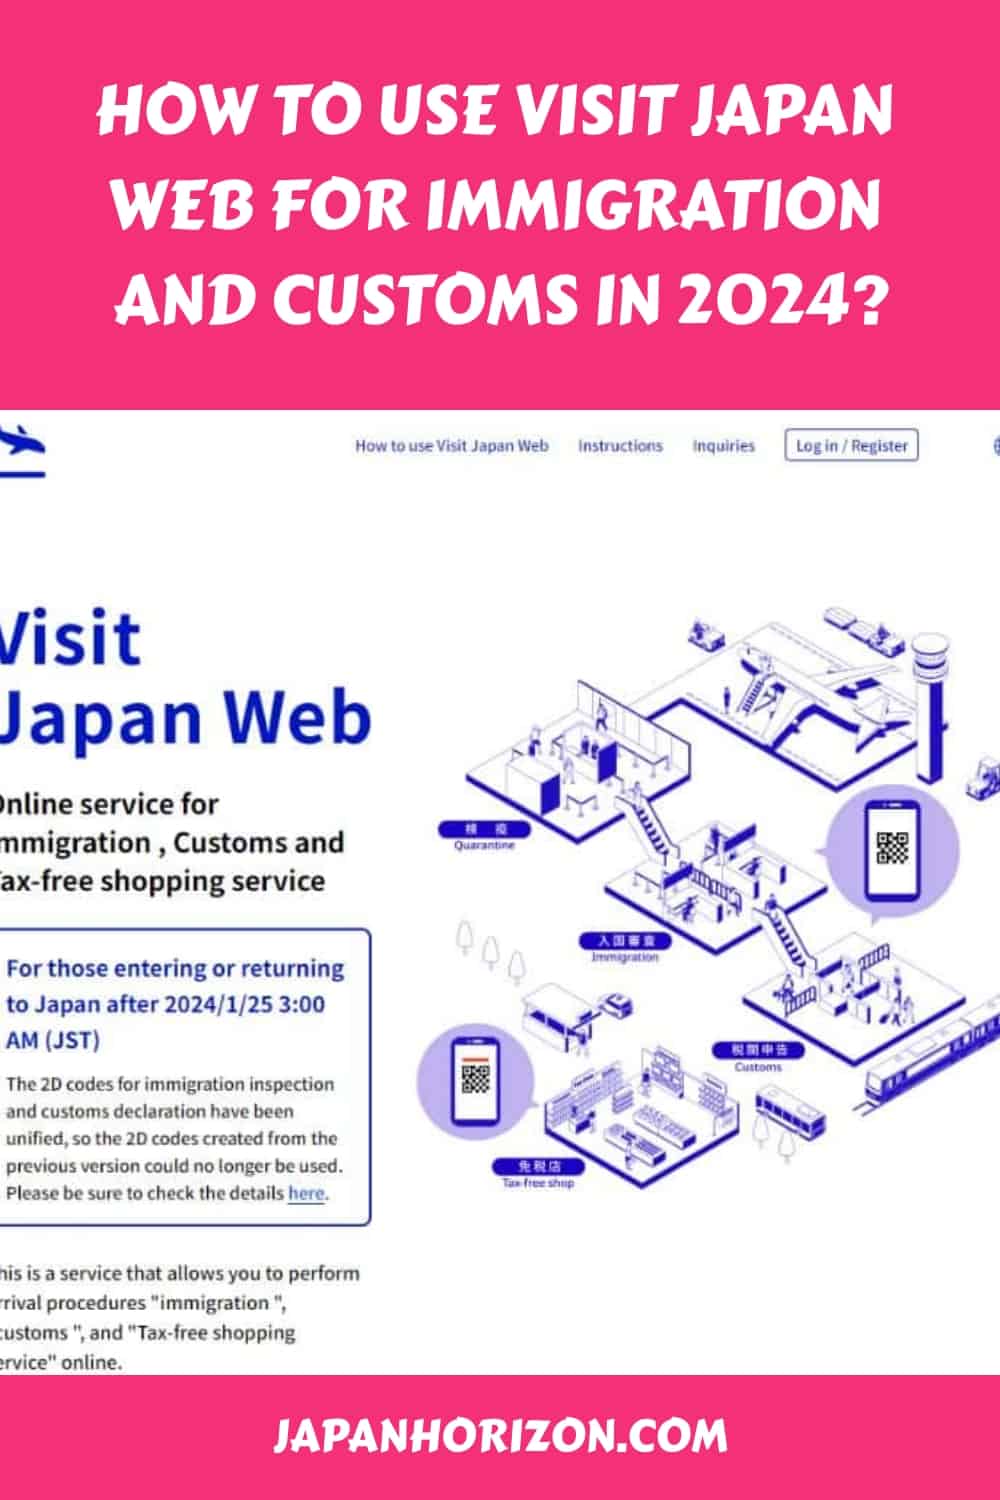 visit japan web shc